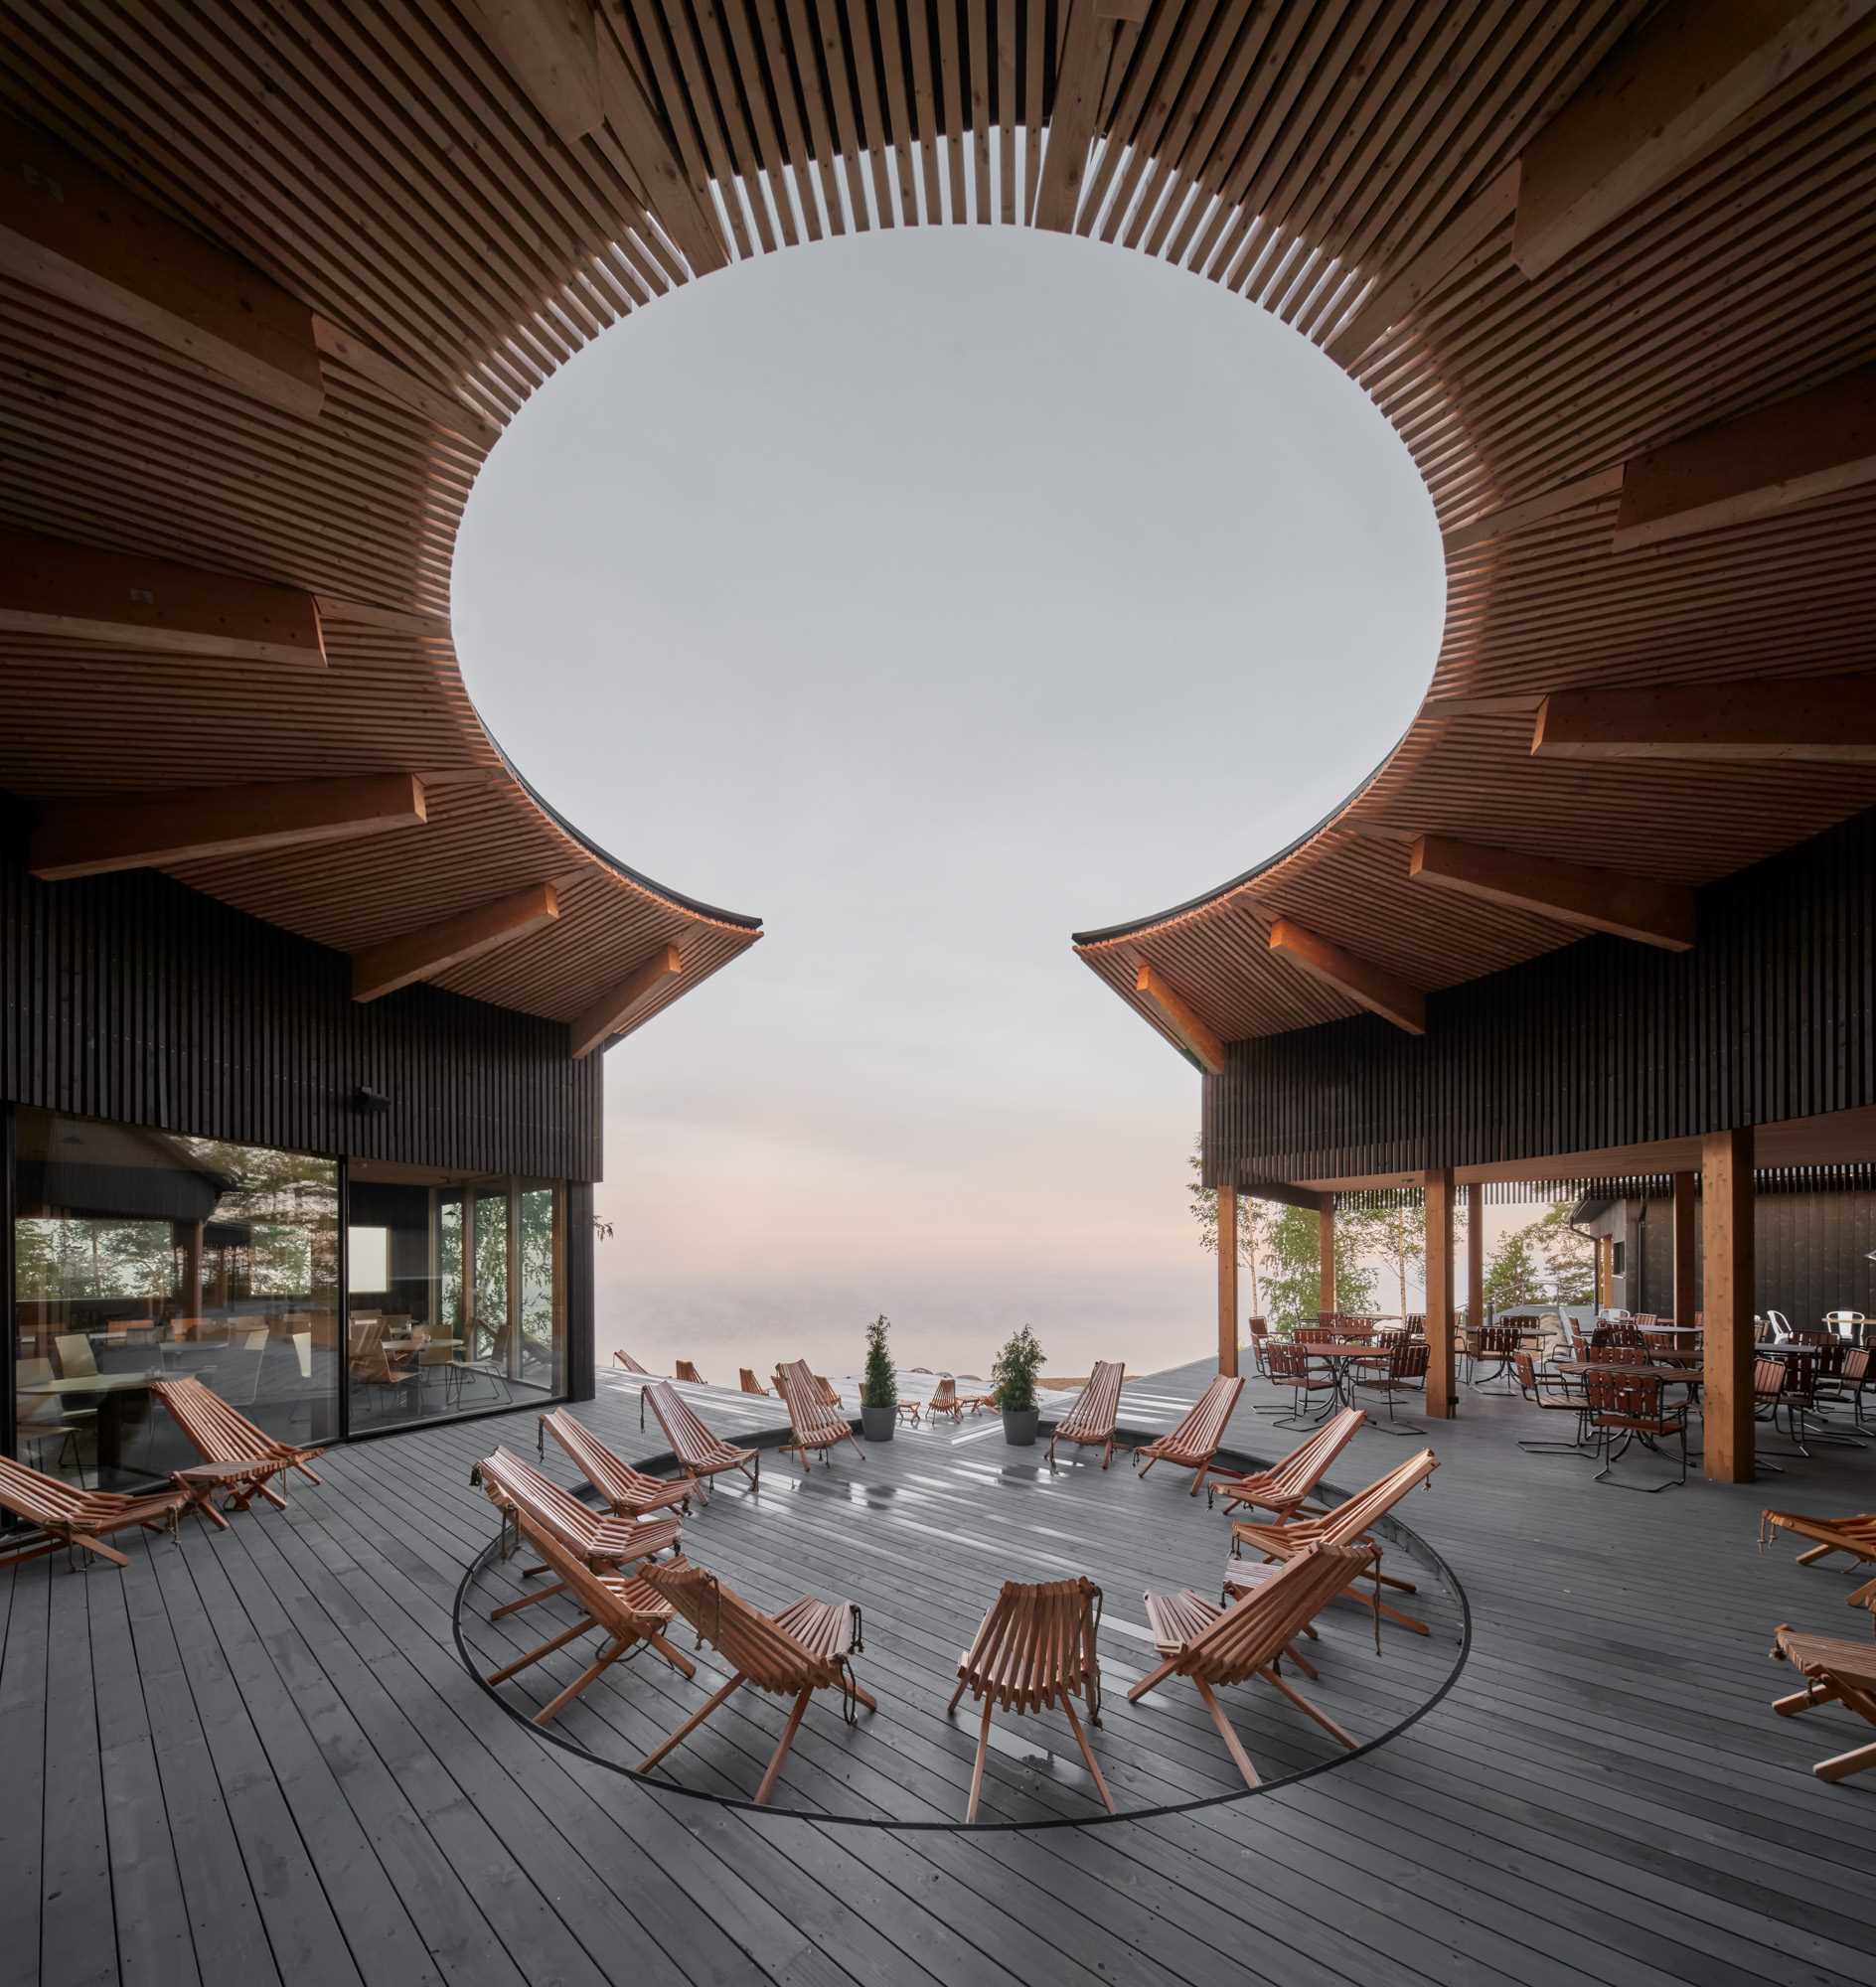 حیاط داخلی منحنی این رستوران مدرن دیدگاه هایی را هم در داخل و هم در خارج از ساختمان ایجاد می کند.